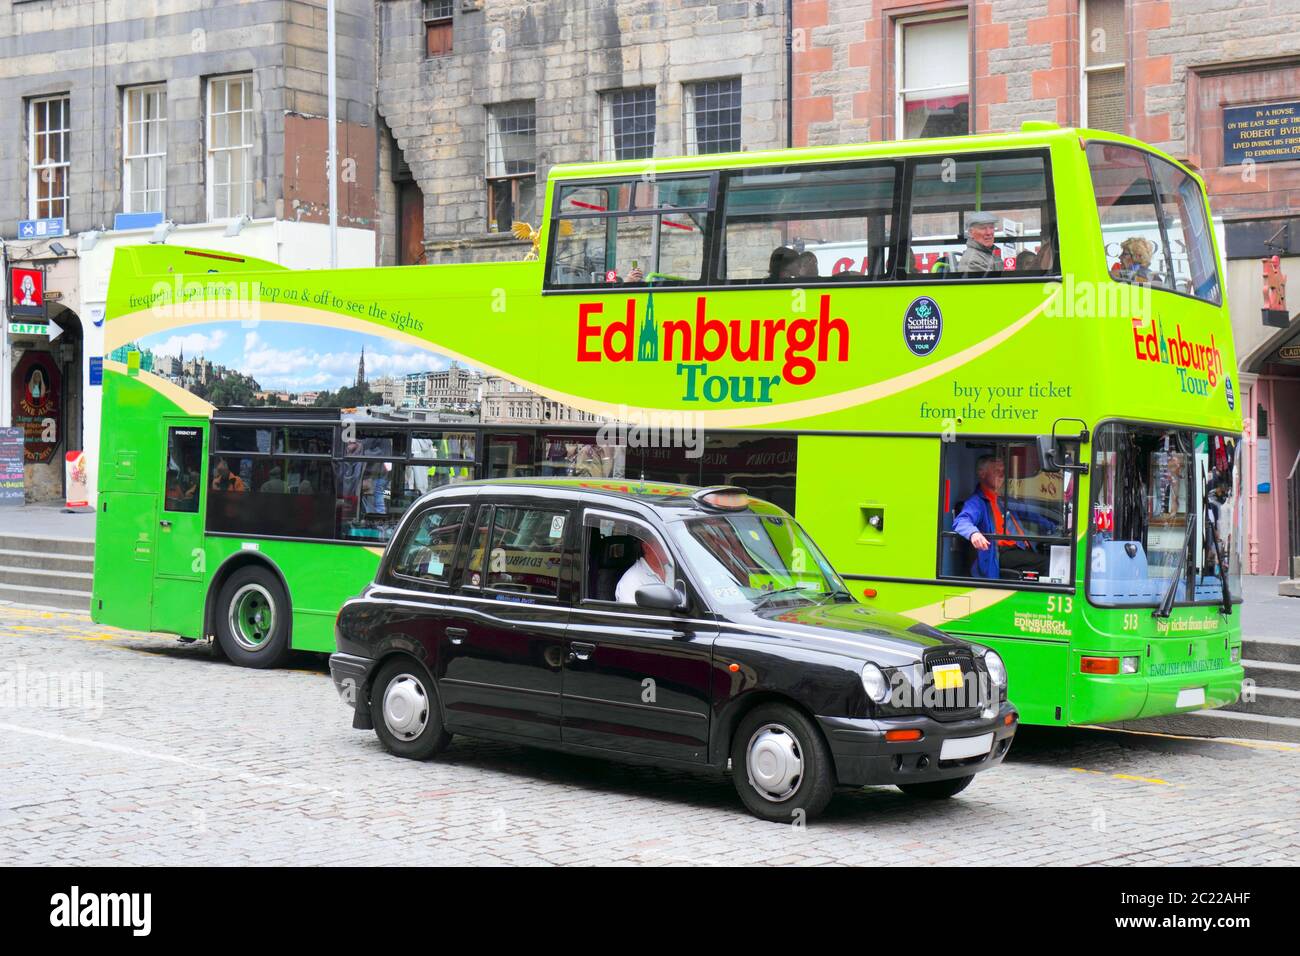 Edinburgh Tourism Stock Photo